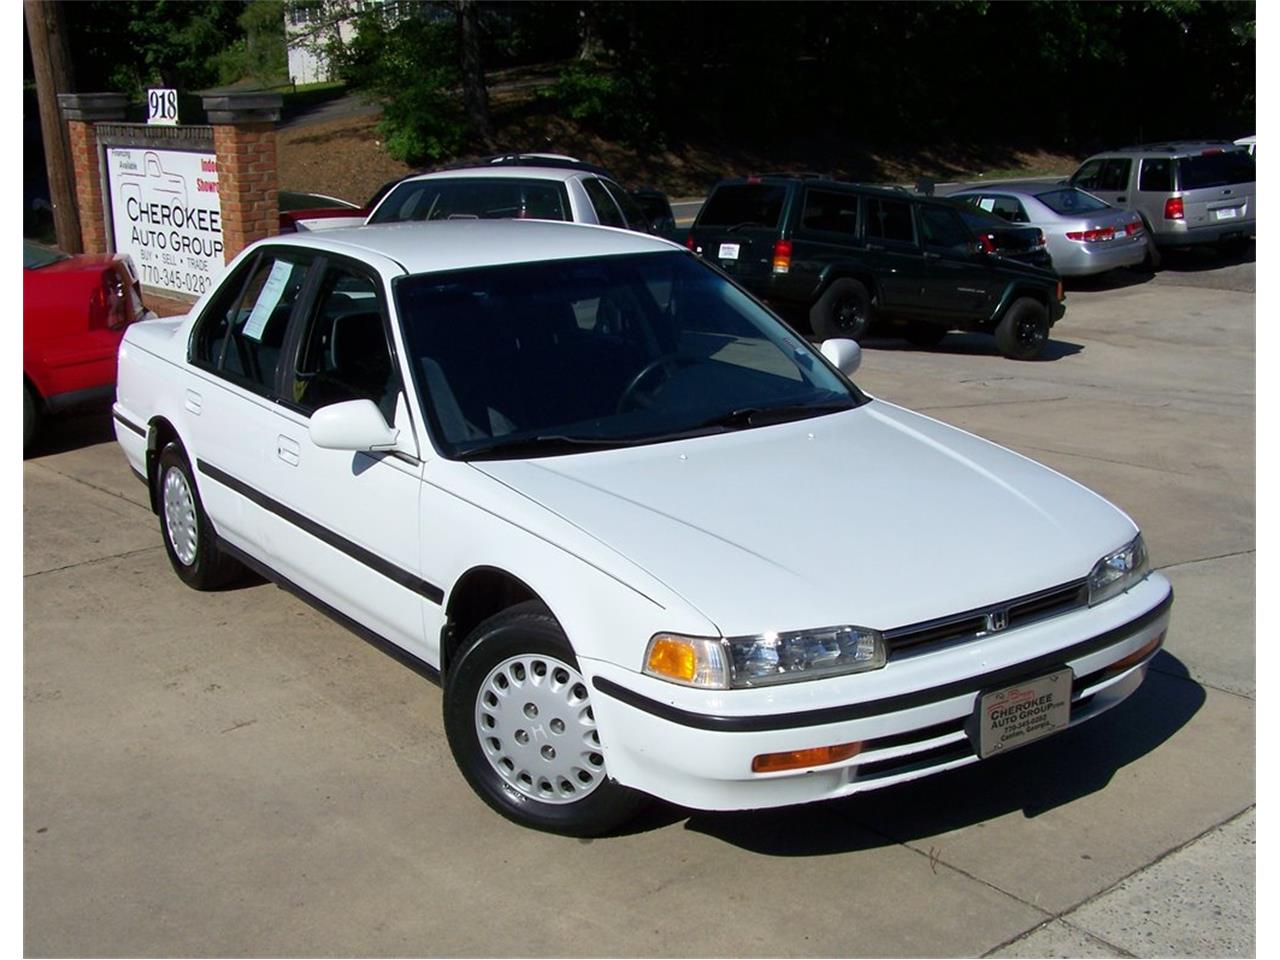 1992 Honda Accord for Sale | ClassicCars.com | CC-1060780